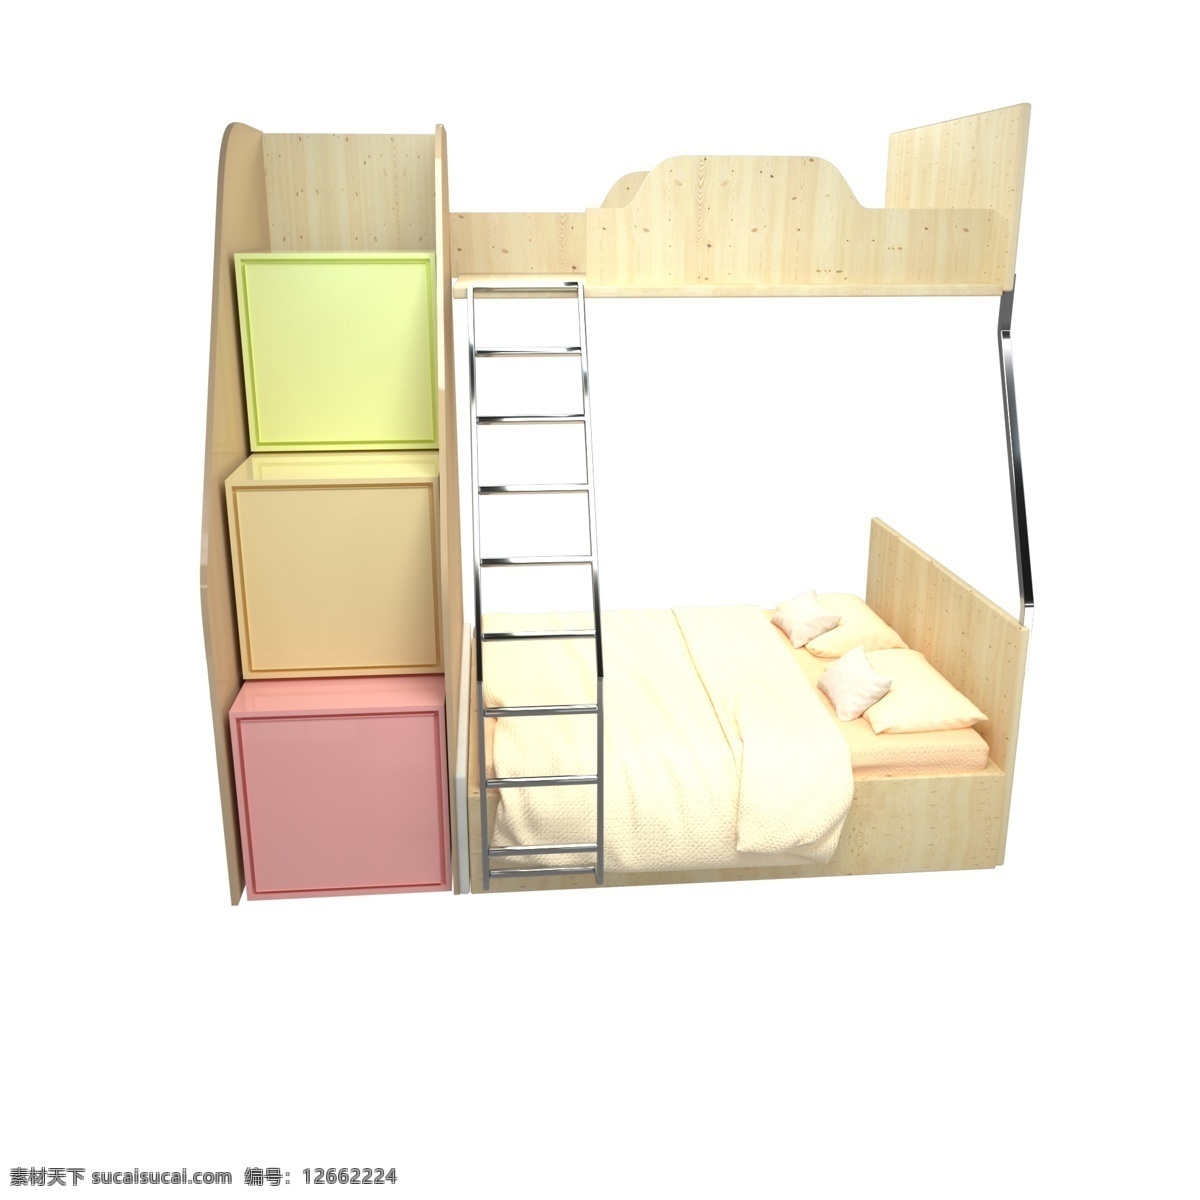 3d 暖色 木质 高低 床 c4d 双人床 写实 布料 欧式床 单人床 家居 家具 家装 卧室家居 床单 床垫 木床 橙色 高低床